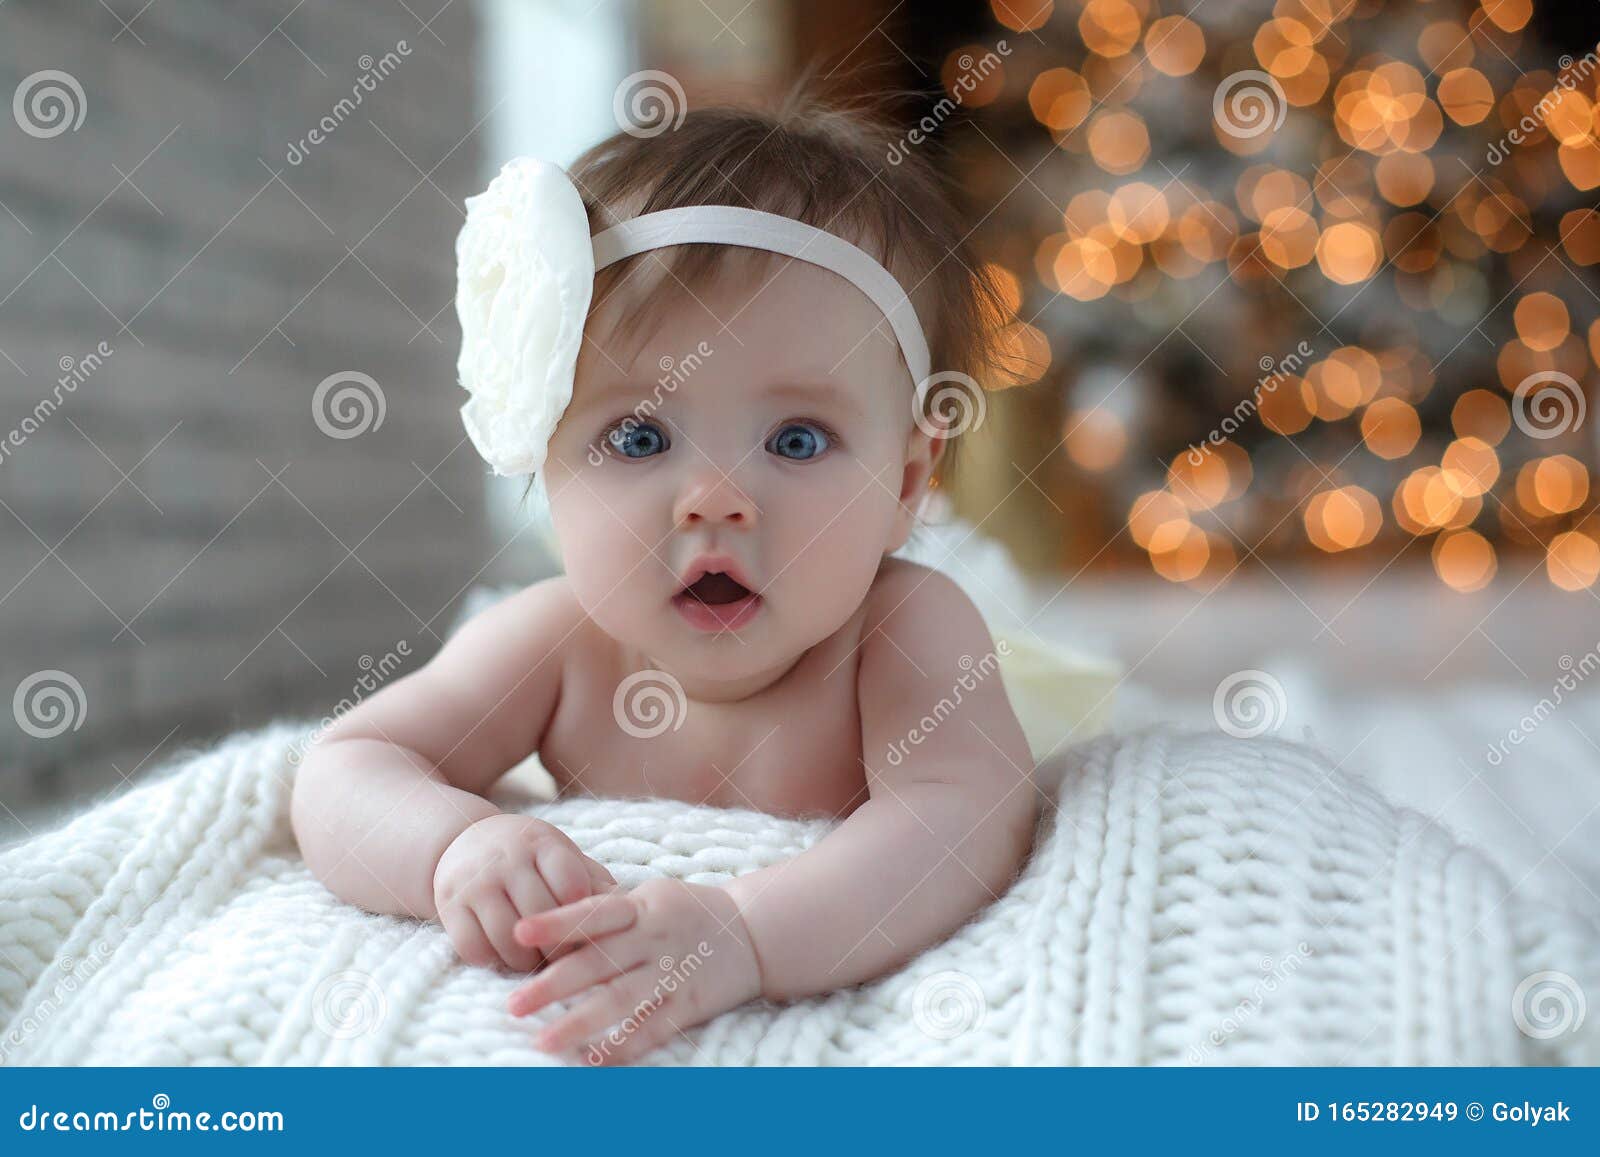 Фото Новорожденных Девочек Красивые